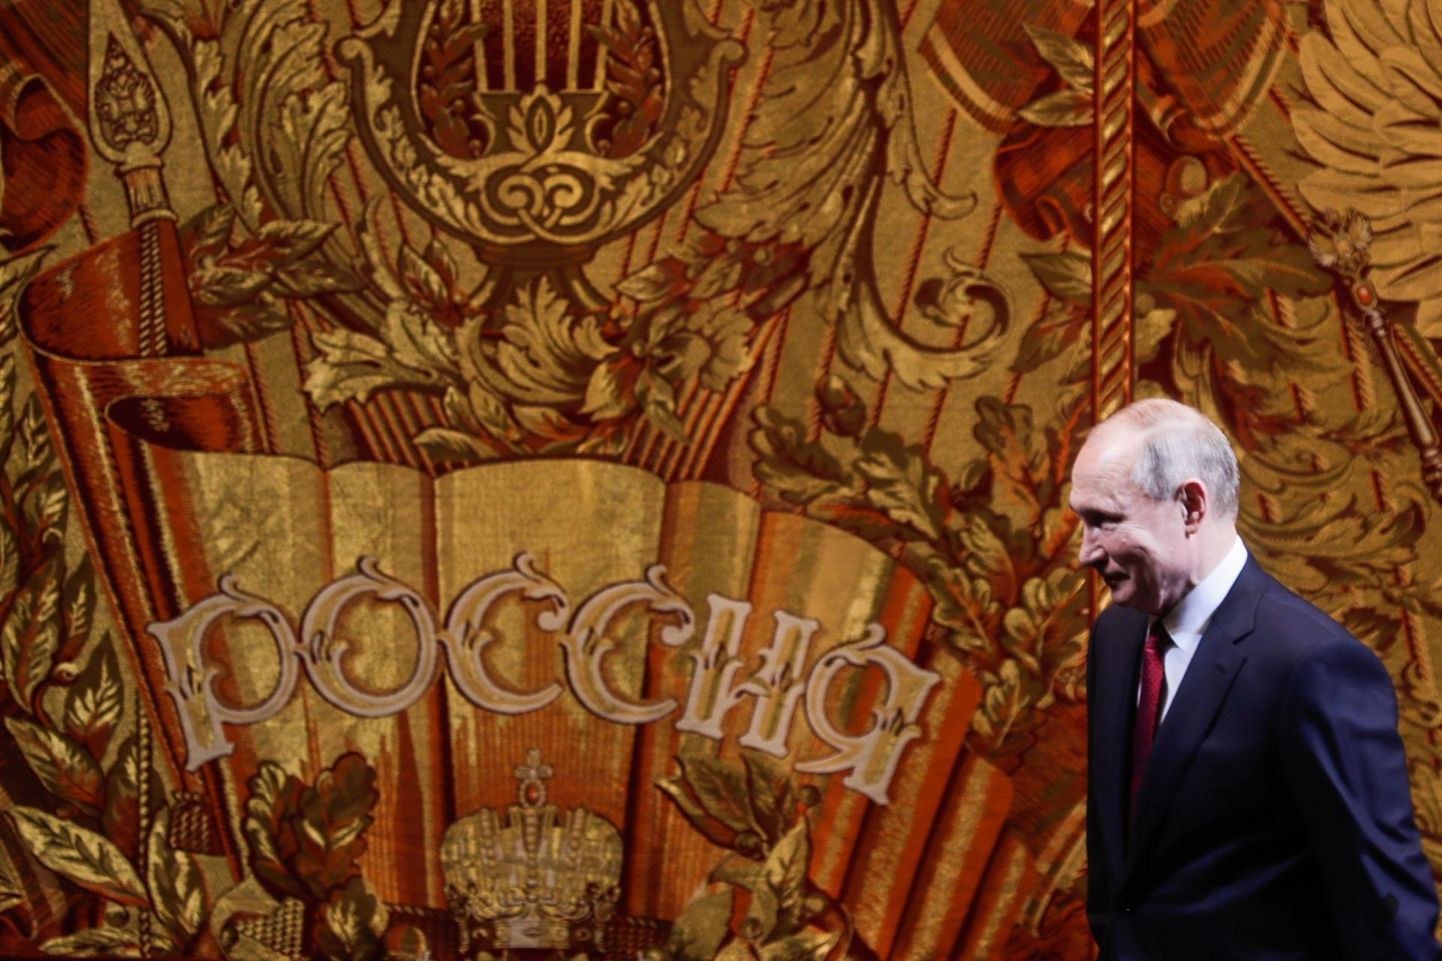 Venemaa eksperdid on veendunud, et Vladimir Putin jääb mingis vormis võimule ka pärast seda, kui tema ametiaeg presidendina 2024. aastal lõppeb.